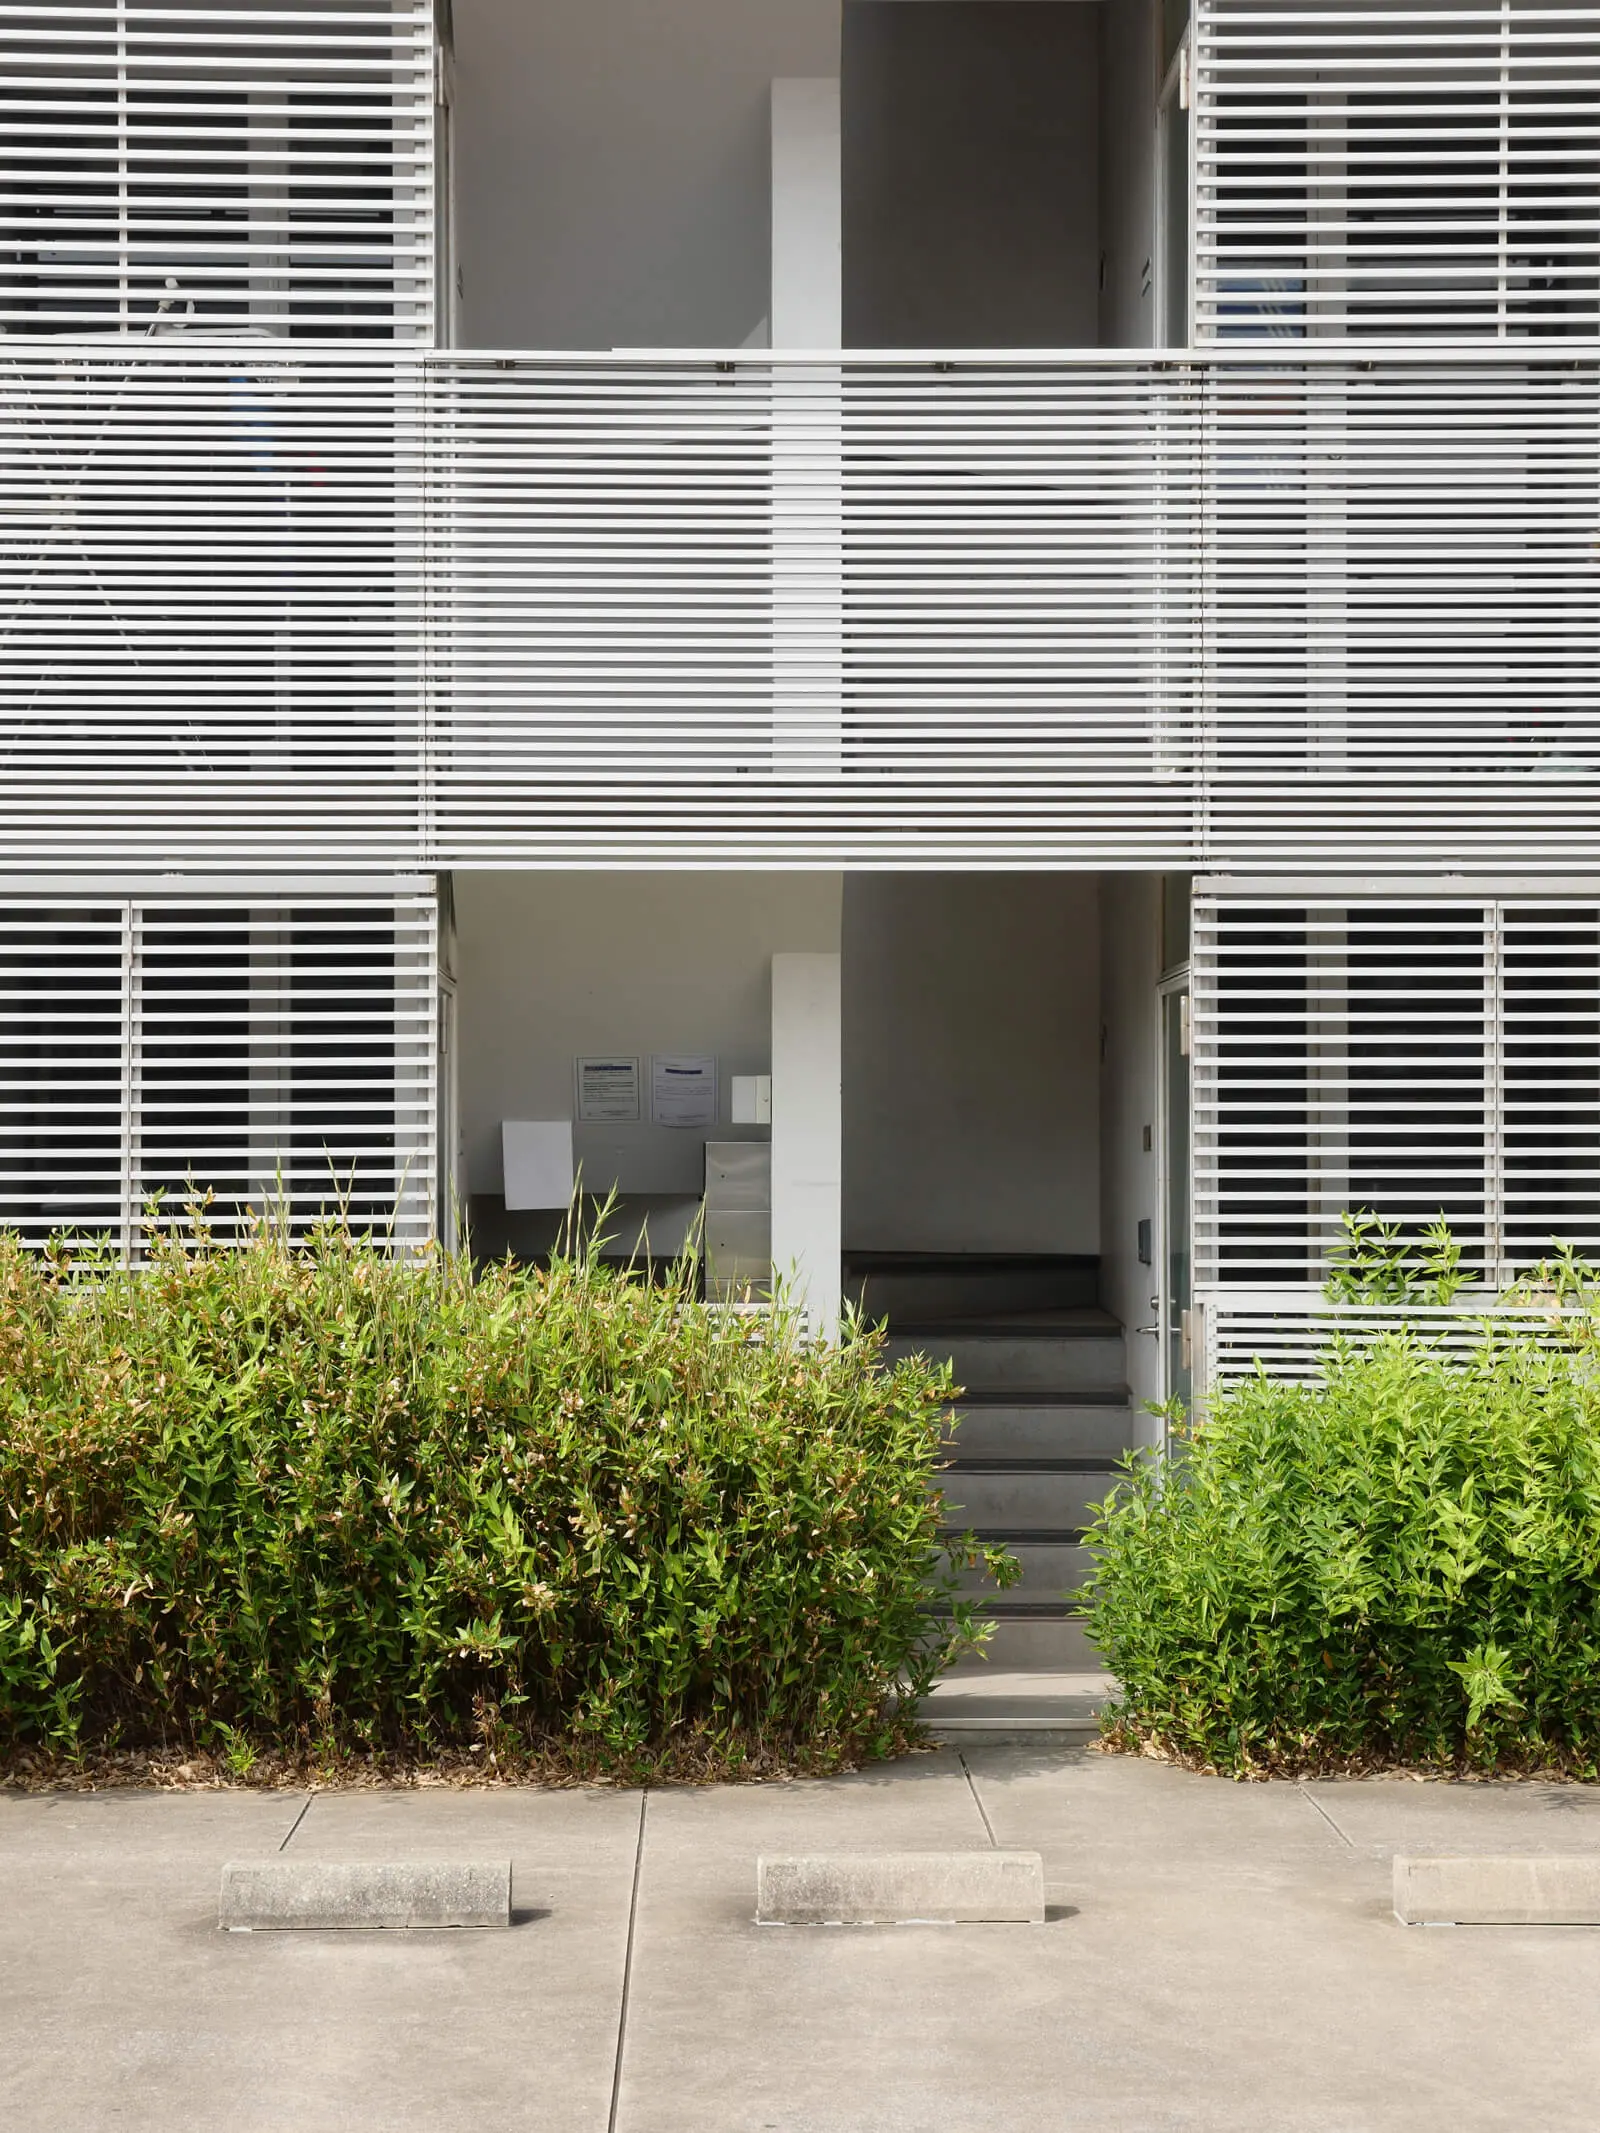 RIGATO F｜千葉県の有名建築｜住宅/ビル/マンション設計者の建もの探訪